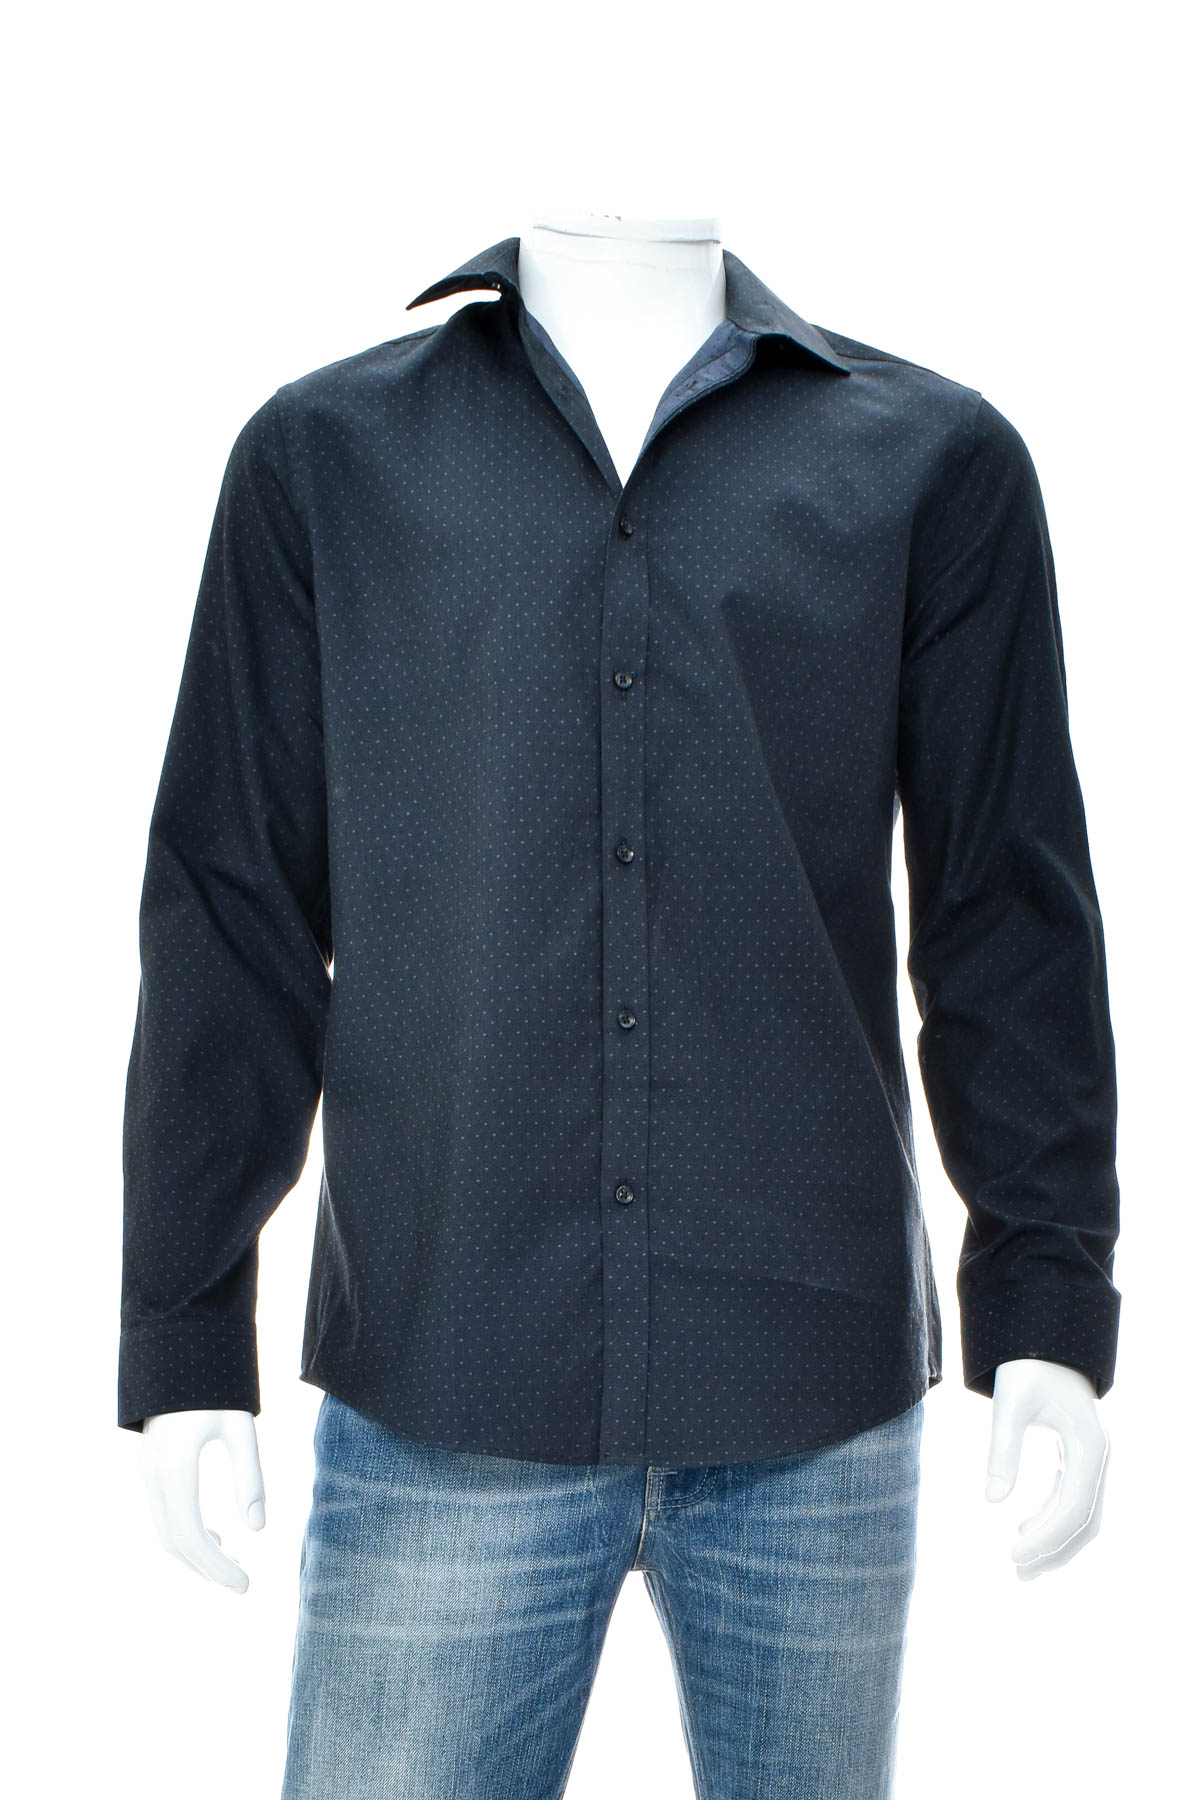 Ανδρικό πουκάμισο - LIMITED EDITIONS - 0